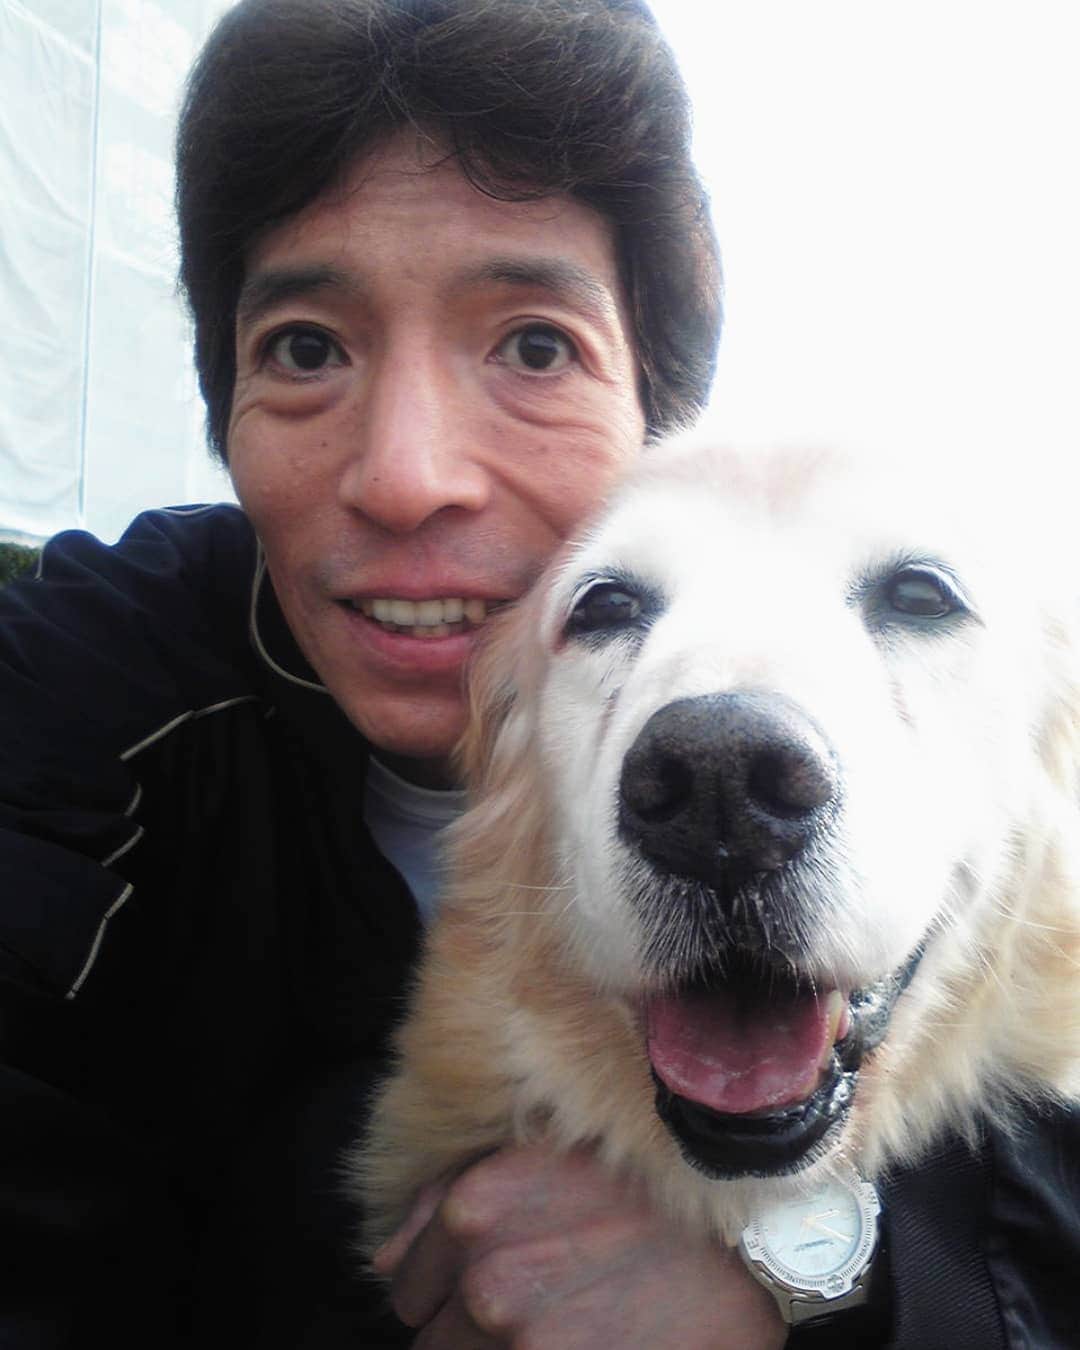 松野行秀さんのインスタグラム写真 - (松野行秀Instagram)「今日はキャンディの祥月命日です🙏 · · · キャンディは、2013年の今日6月20日、享年15才と9ヶ月で旅立ちました。 · · · 〈2013年6月20日の日記〉 · ～～〜～～～～～～～～～ · 今日は、皆さんに悲しいお知らせをしなければなりません。 · 愛犬キャンディが、今朝他界致しました。 · 享年15才と9ヶ月・・・人間の歳に換算して90歳でした。 · 幸いなことに、キャンディの最期をしっかりと看取ることが出来ました。 · 今日は、辛いのでこの辺でペンを置かせて頂きます。 · 永遠の眠りに就いたキャンディ・・・声を掛ければ、今にも起きてきそうな安らかな寝顔です。 · 〜～～～～～～～～～～～ · · 私とキャンディは、キャンディが生後3ヶ月の時に都内のペットショップで出逢いました。 · · 抱っこしたとたんに、無心に私の顔をペロペロ舐めてきた人懐こいキャンディに即座に心を奪われました。 · · 都内でキャンディと一緒に暮らし始めた当時、私は離婚騒動の渦中という試練の中に身を置いておりました。 · · しかし、どんなに辛いことや嫌なことがあっても、家に戻ってキャンディのあどけない顔を見ているうちに、私はいつも心が癒されました。 · · 騒動の後、私とキャンディは出身地である福島に移住することになりました。 · · 福島に移ってからもキャンディには色々と心配を掛けっぱなしでしたが、キャンディはいつも傍らで優しく私を見守っていてくれました。 · · 出逢った時はあどけない赤ちゃんだったキャンディが、いつの間にか私の年齢を飛び越えて、そして最期は私より早く逝ってしまいました。 · · · キャンディを喪ったばかりの頃は、ワンちゃんの寿命の短さを恨めしく思ったこともありましたが、でも、お陰様で今はキャンディを失った淋しさよりも、キャンディと共に過ごせたことに対する感謝や喜び、そして、キャンディとの楽しかった思い出と共に毎日を過ごすことが出来るようになりました。 · · · キャンディの遺骨は、納骨せずに、今も自室の祭壇で手厚く供養させて頂いております。 · · · 『願以此功徳　普及於一切　我等與衆生　皆共成仏道』 · 覚念行秀  合掌 · · · (ＪＫＣ発行の国際公認血統証明書より) 〈犬種〉 ・ゴールデンレトリバー 〈登録番号〉 ・RG-46839/97 〈性別〉 ・メス 〈毛色〉 ・ゴールデン 〈繁殖者〉 ・TETSUYA HIRONAKA(TOYOHASHICITY) 〈譲渡年月日〉 ・1997年11月1日 〈所有者〉 ・YUKIHIDE MATSUNO 〈登録日〉 ・1997年12月8日 〈生年月日〉 ・1997年9月3日 〈出産頭数〉 ・オス4 ・メス3 〈父〉 ・1992年2月23日生まれ（毛色ゴールデン) ※父方は３代続きのチャンピオン(AM) 〈母〉 ・1993年12月15日生まれ（毛色ゴールデン) 〈犬名〉 ・シグナス オブ トヨハシ ヒロナカ ＪＰ（その後キャンディ オブ フクシマ マツノＪＰ)」6月20日 19時27分 - g.matsuno